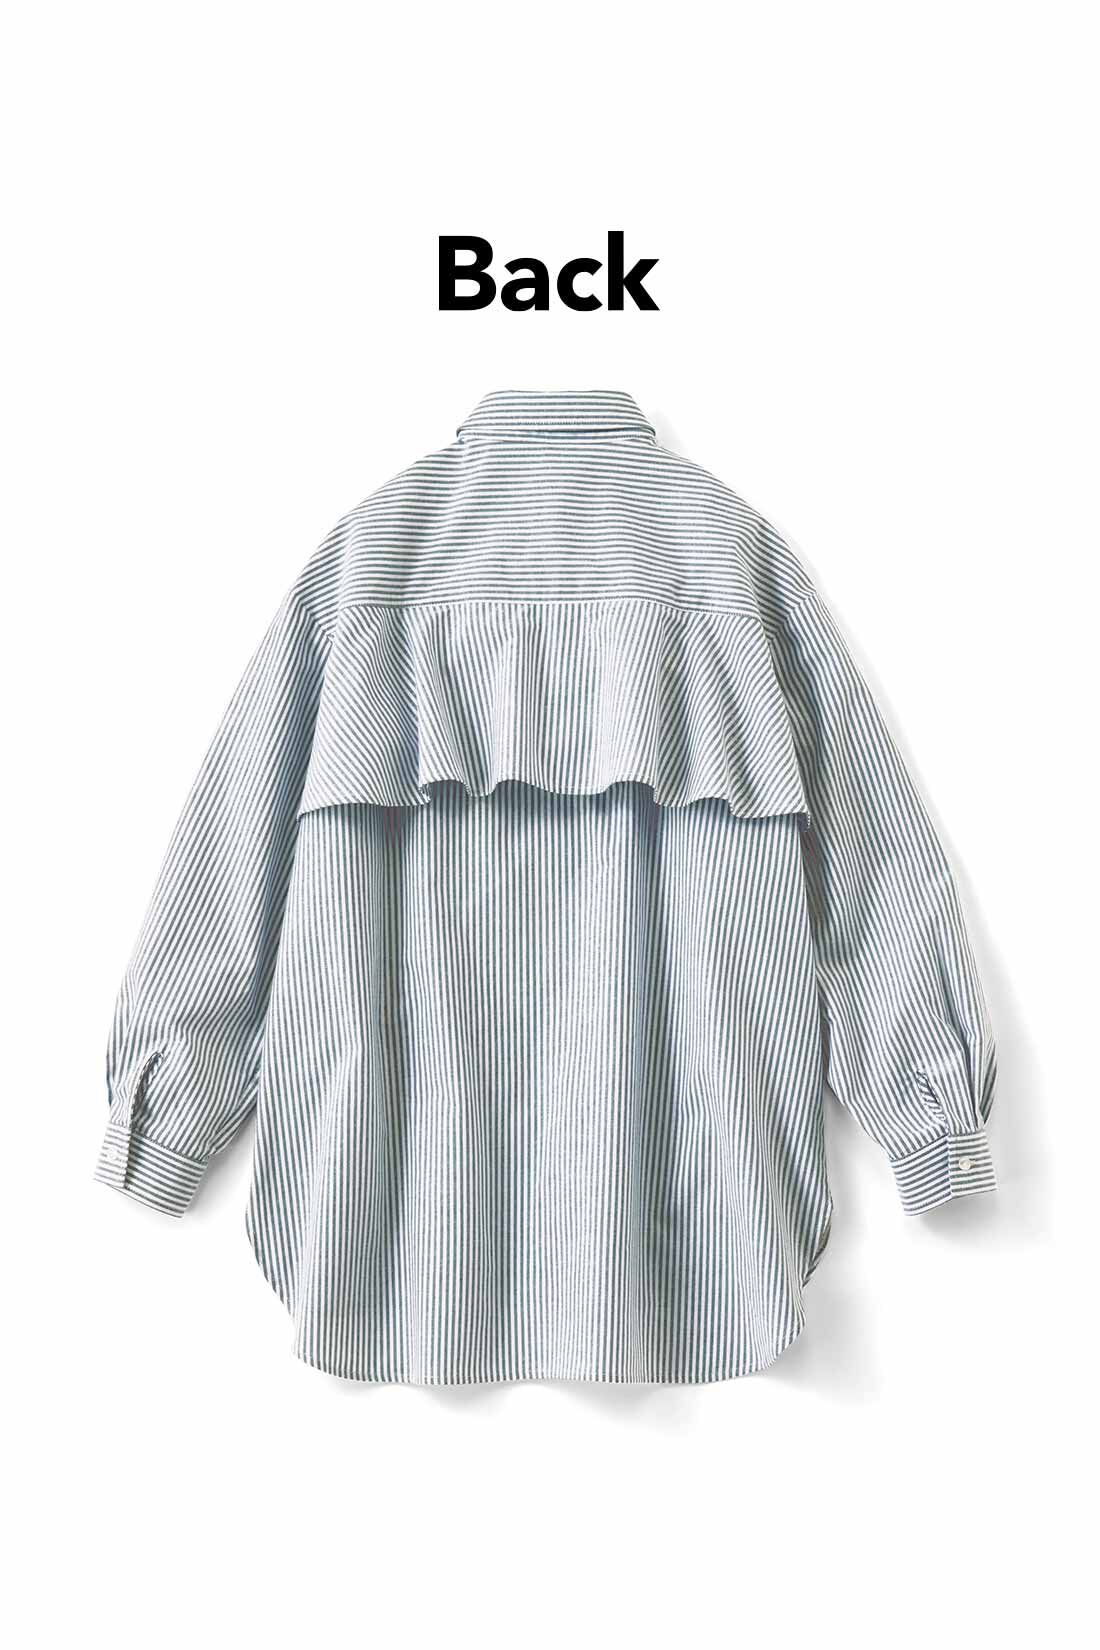 IEDIT|IEDIT[イディット]　バックフレアーデザインがきいた オックスフォード素材のこなれ見えシャツ〈パープル〉|バックフレアーで後ろ姿に女らしさをプラス。